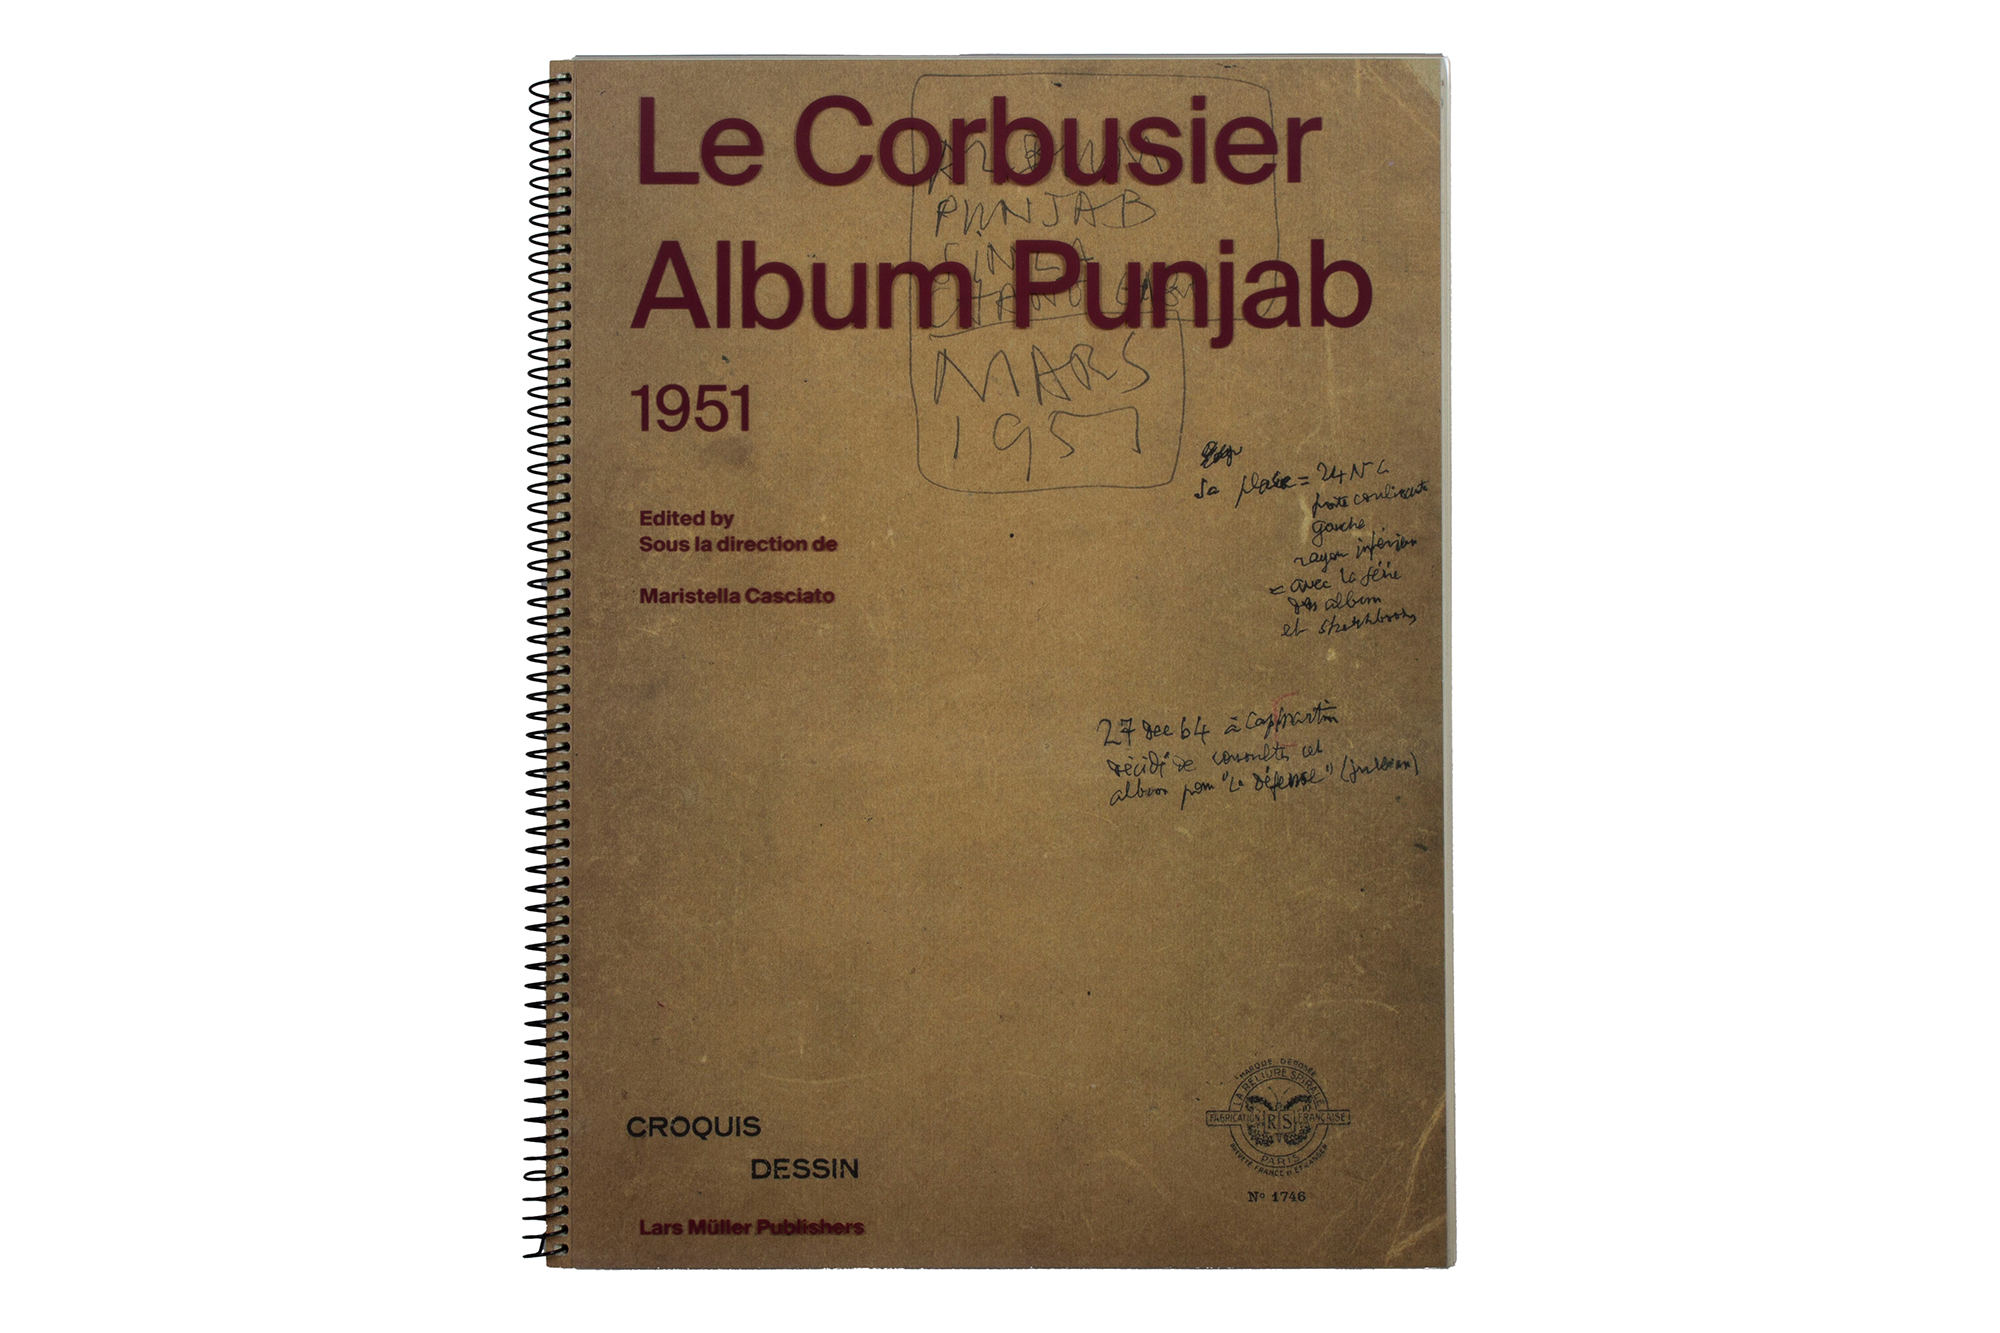 Edizione in facsimile del taccuino di Le Corbusier, noto come l'album Punjab.